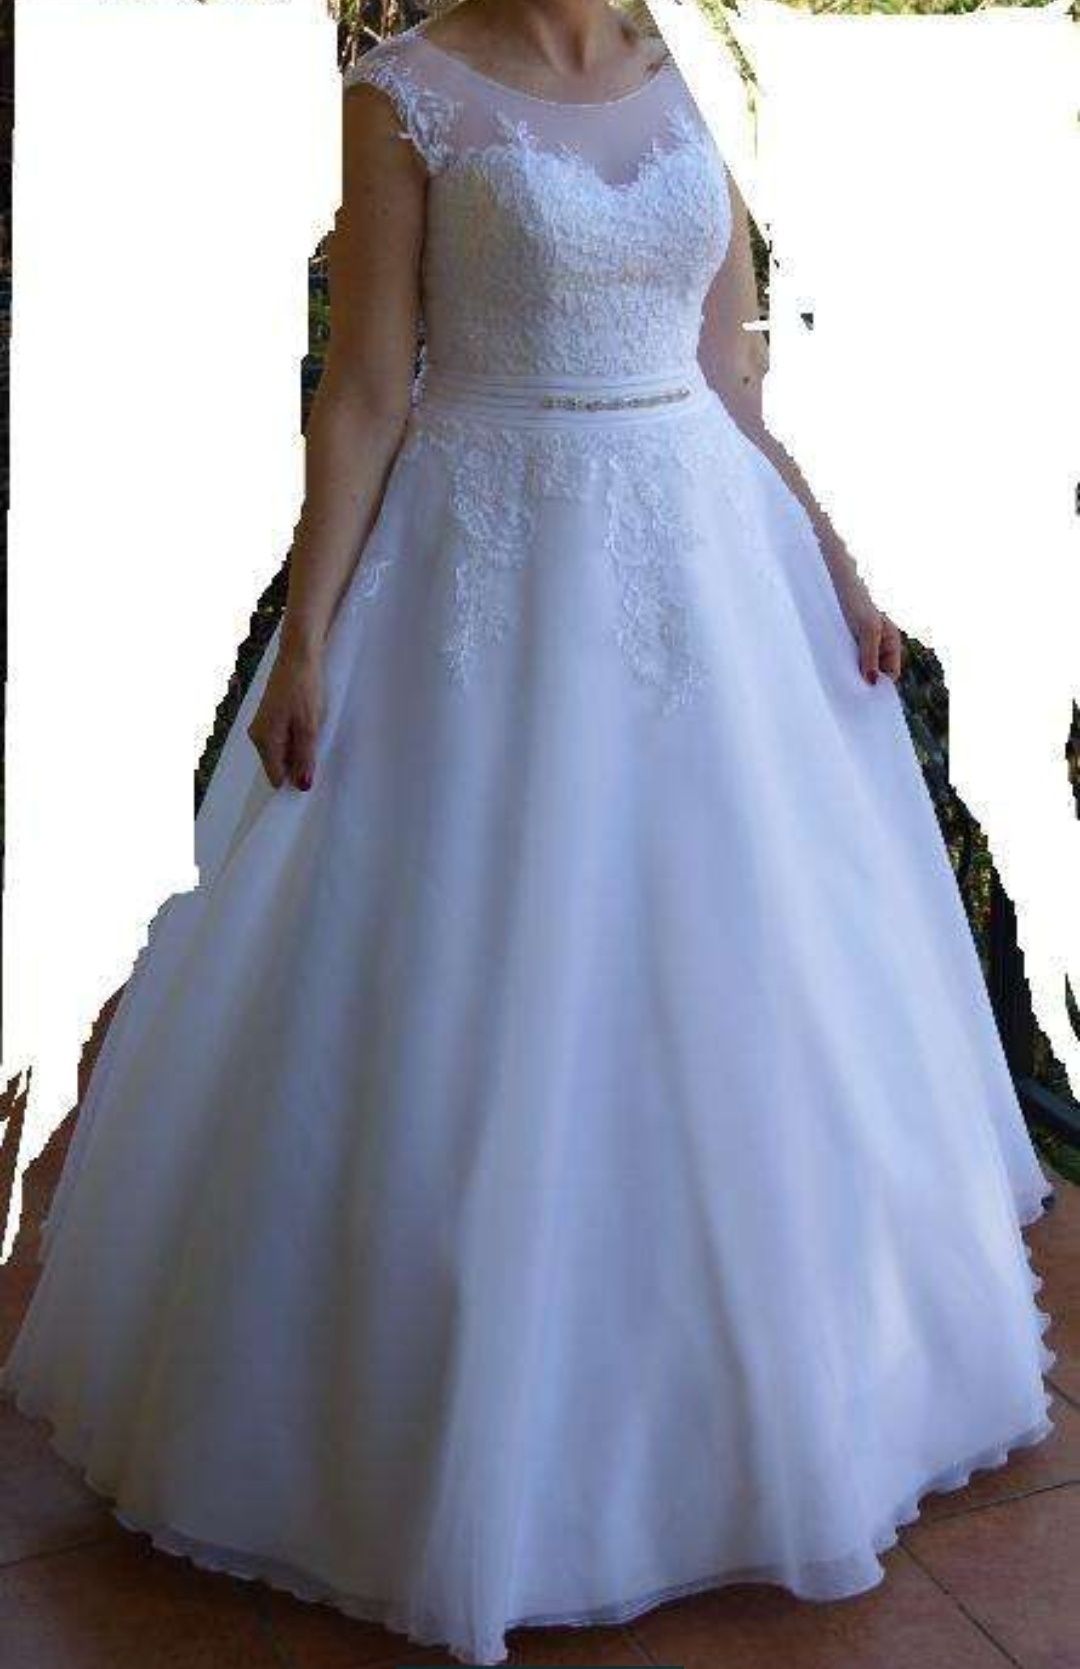 Piękna, cudna suknia ślubna M /L śnieżna biel